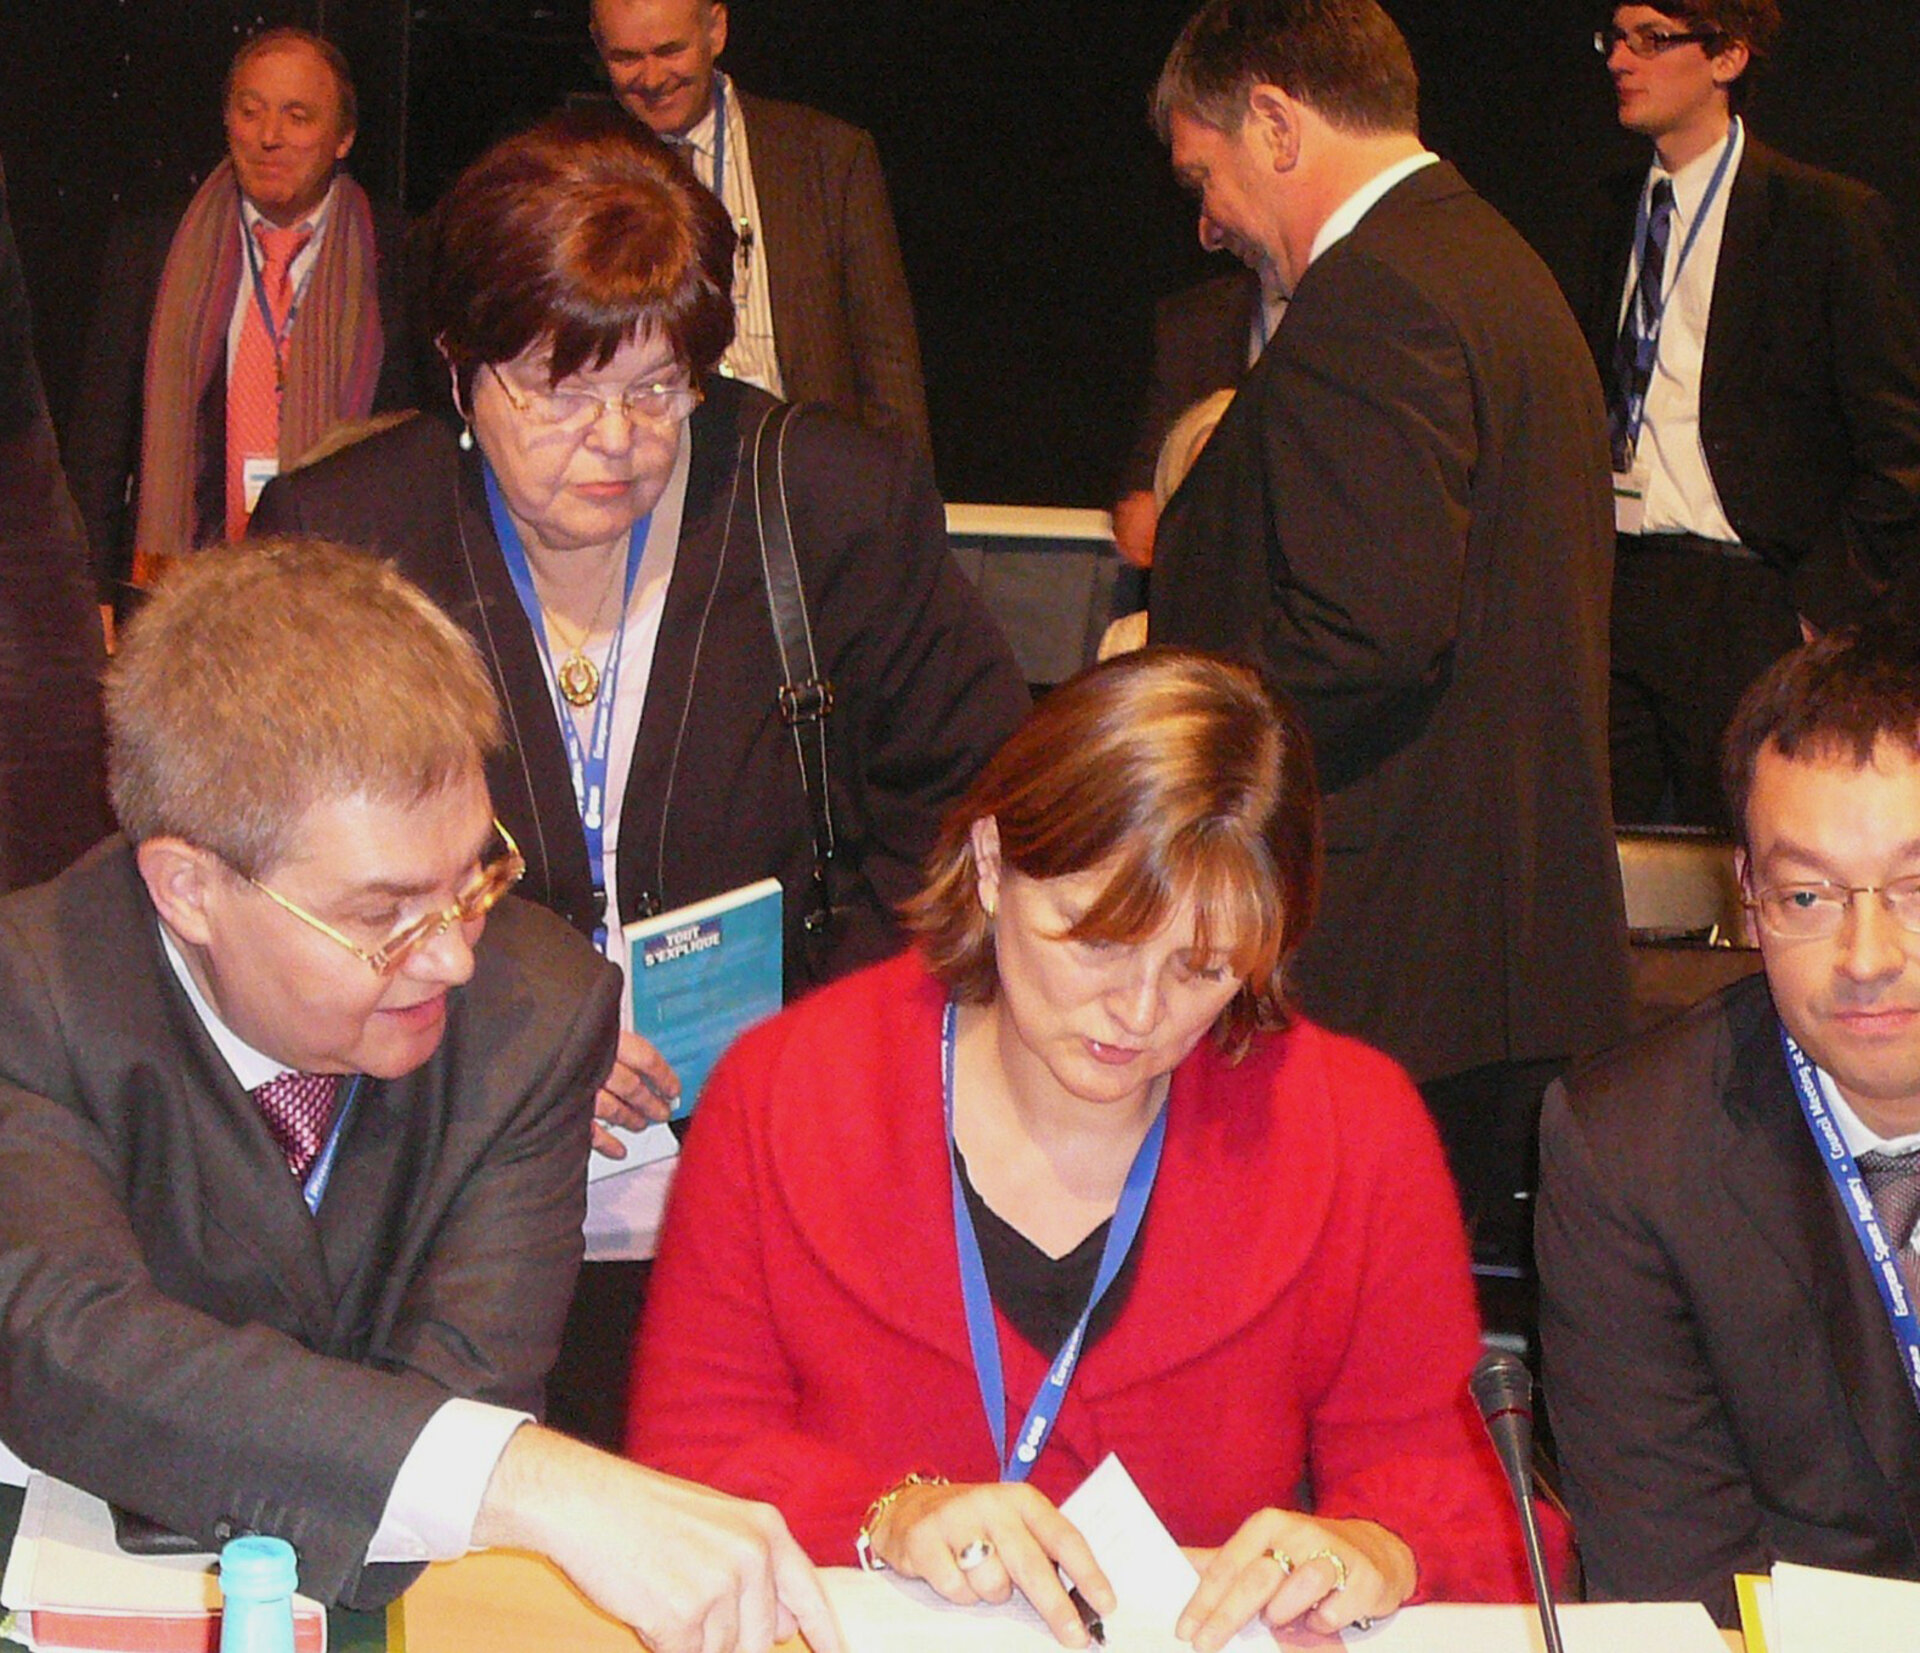 De hoofdrolspelers van de Belgische delegatie tijdens de ESA-ministerraad in Den Haag